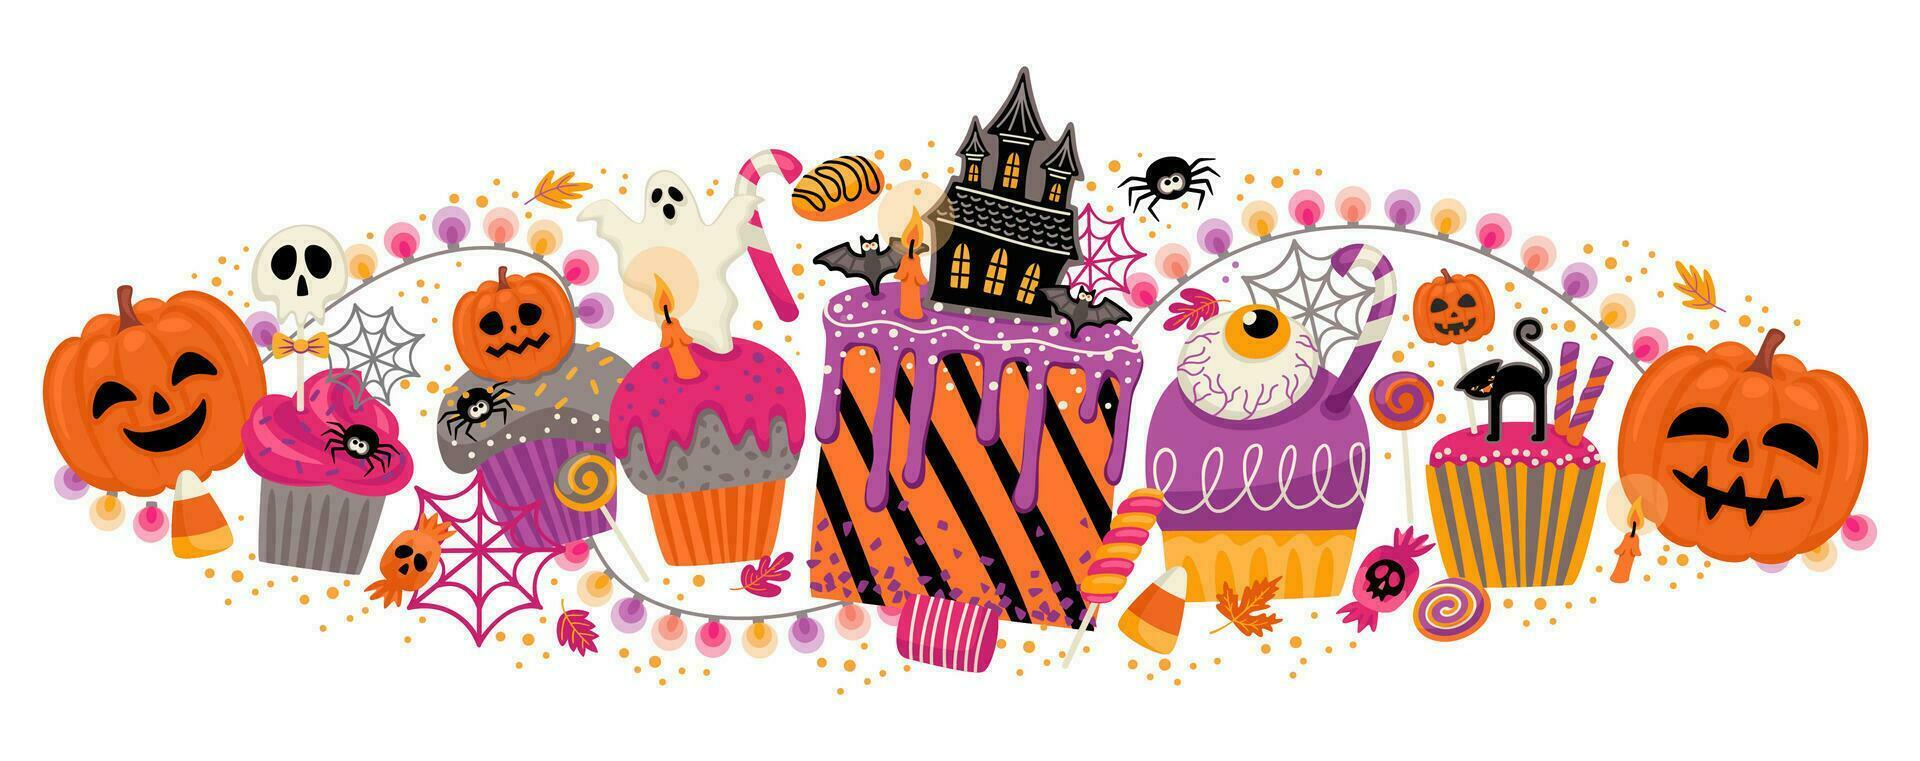 Halloween illustrazione. decorato cupcakes, muffin, pasticcini dolci caramelle vettore modello per striscione, carta, manifesto, ragnatela e altro uso